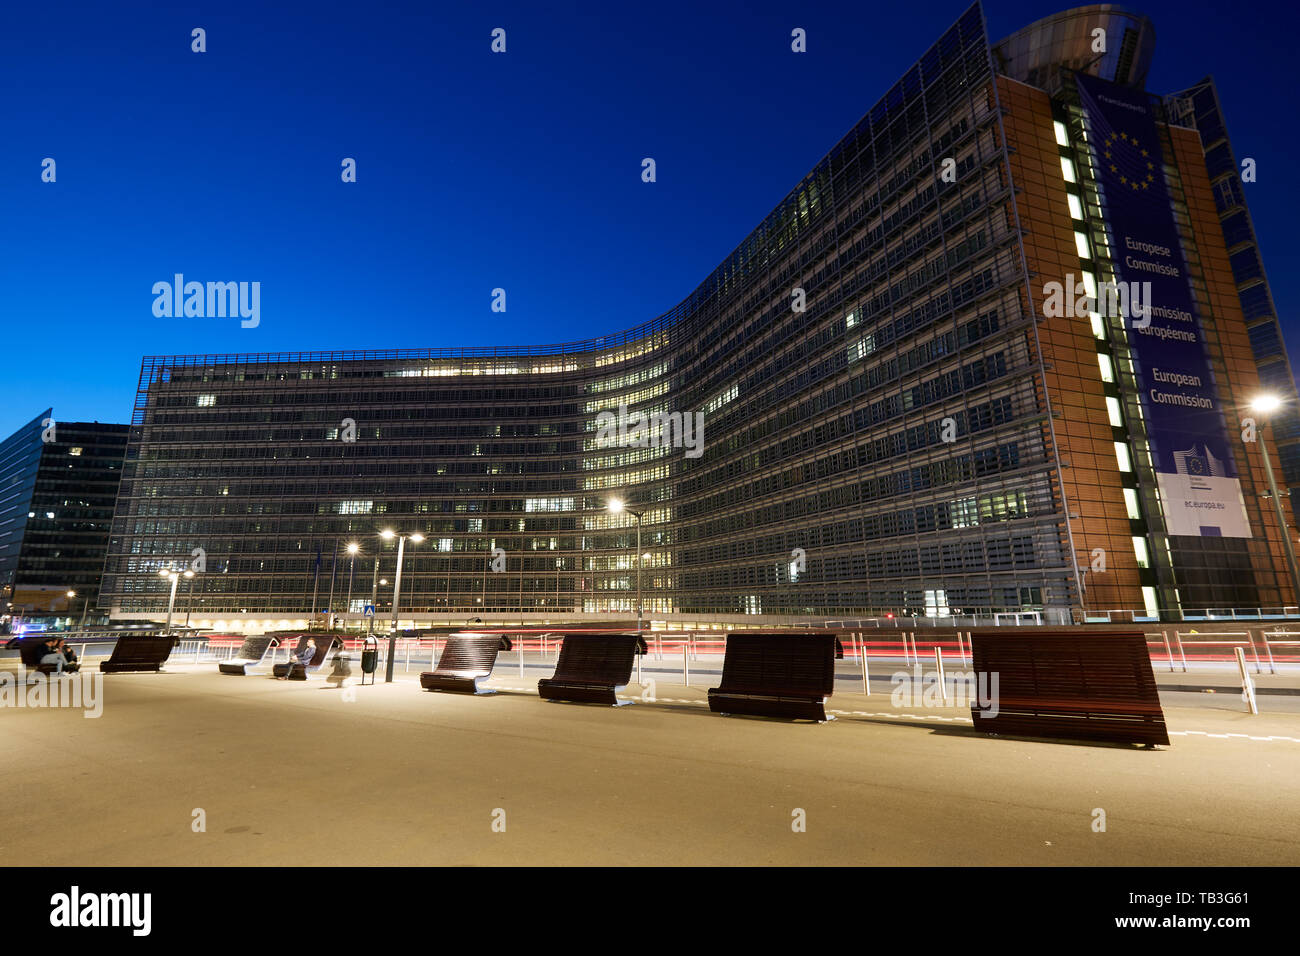 01.04.2019, Brüssel, Brüssel, Belgien - Die beleuchteten Berlaymont Gebäude im Europaviertel in den Abend. 00 R 190401 D 231 CAROEX.JPG [MODELL RELE Stockfoto